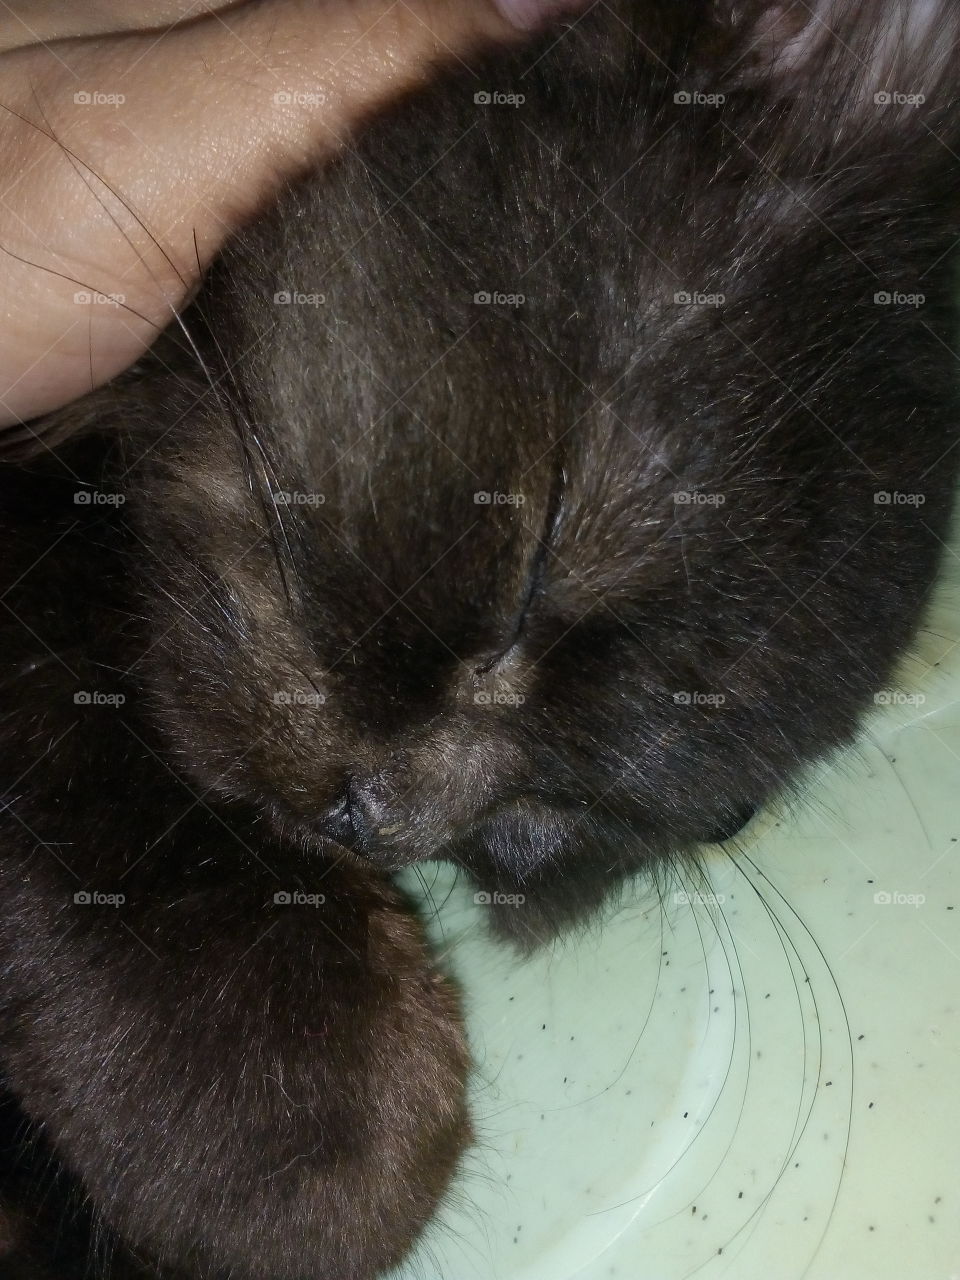 My Baby Black Cat